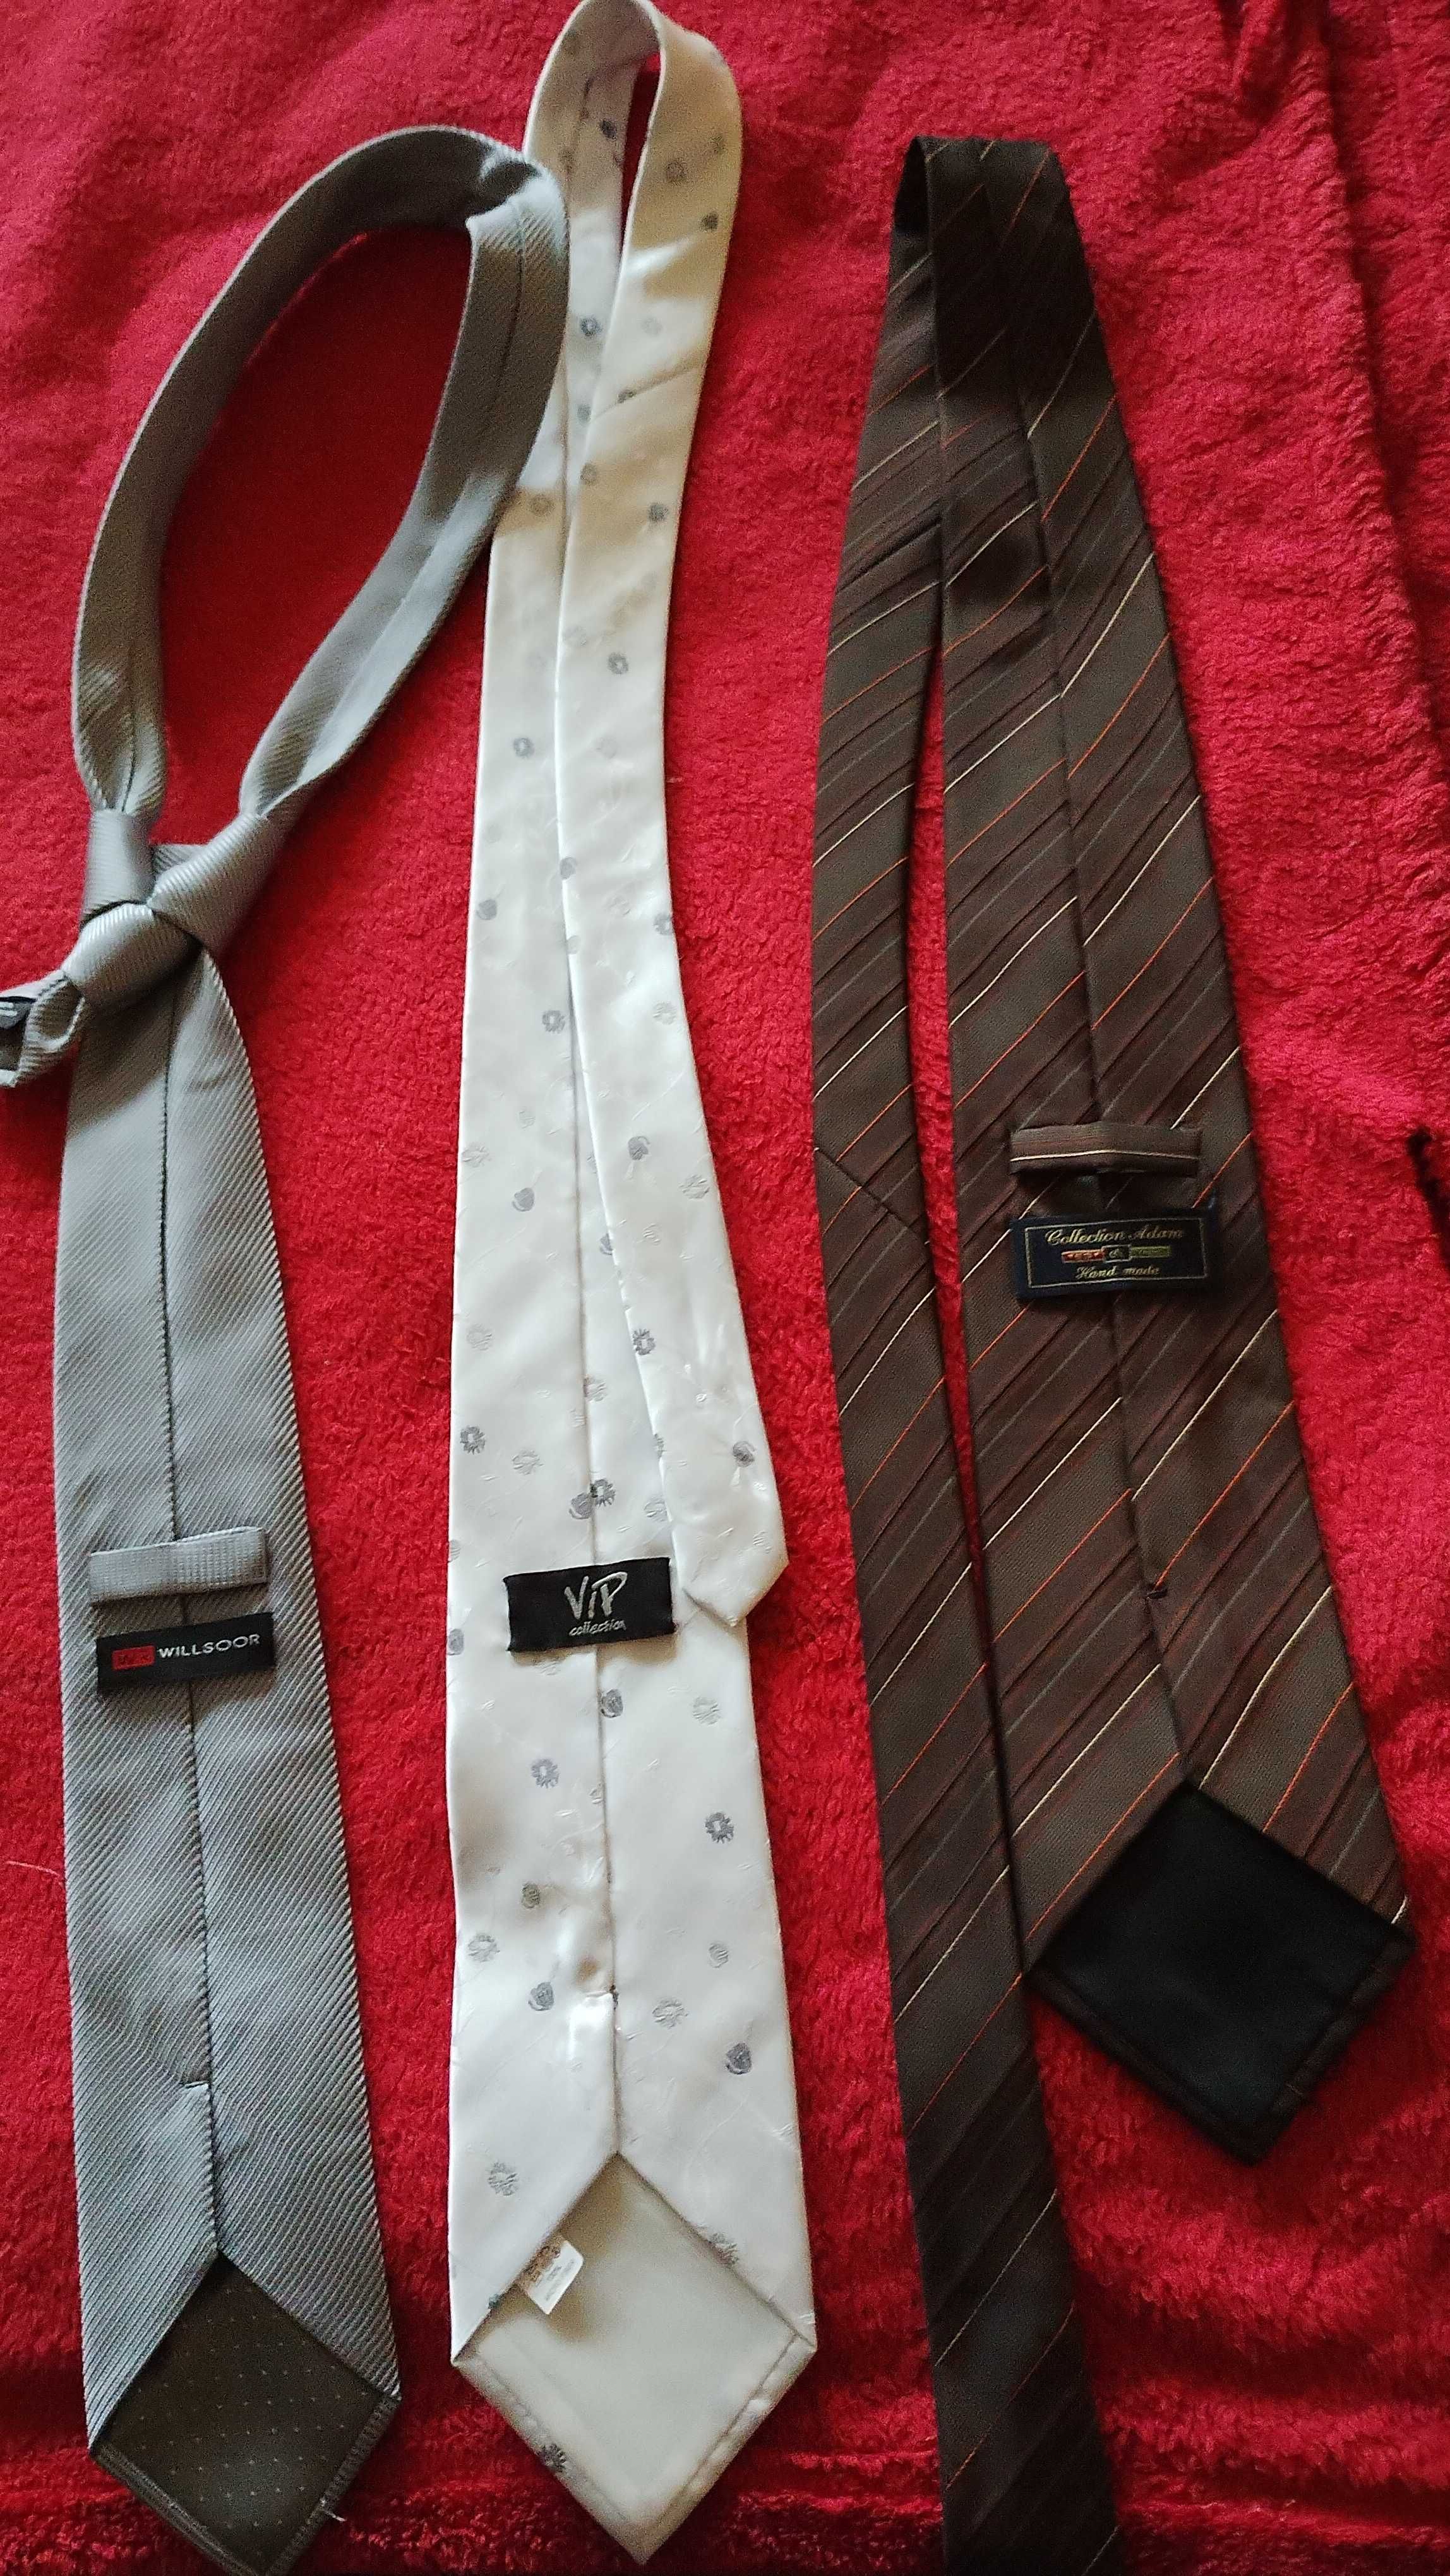 Krawaty męskie różnych marek